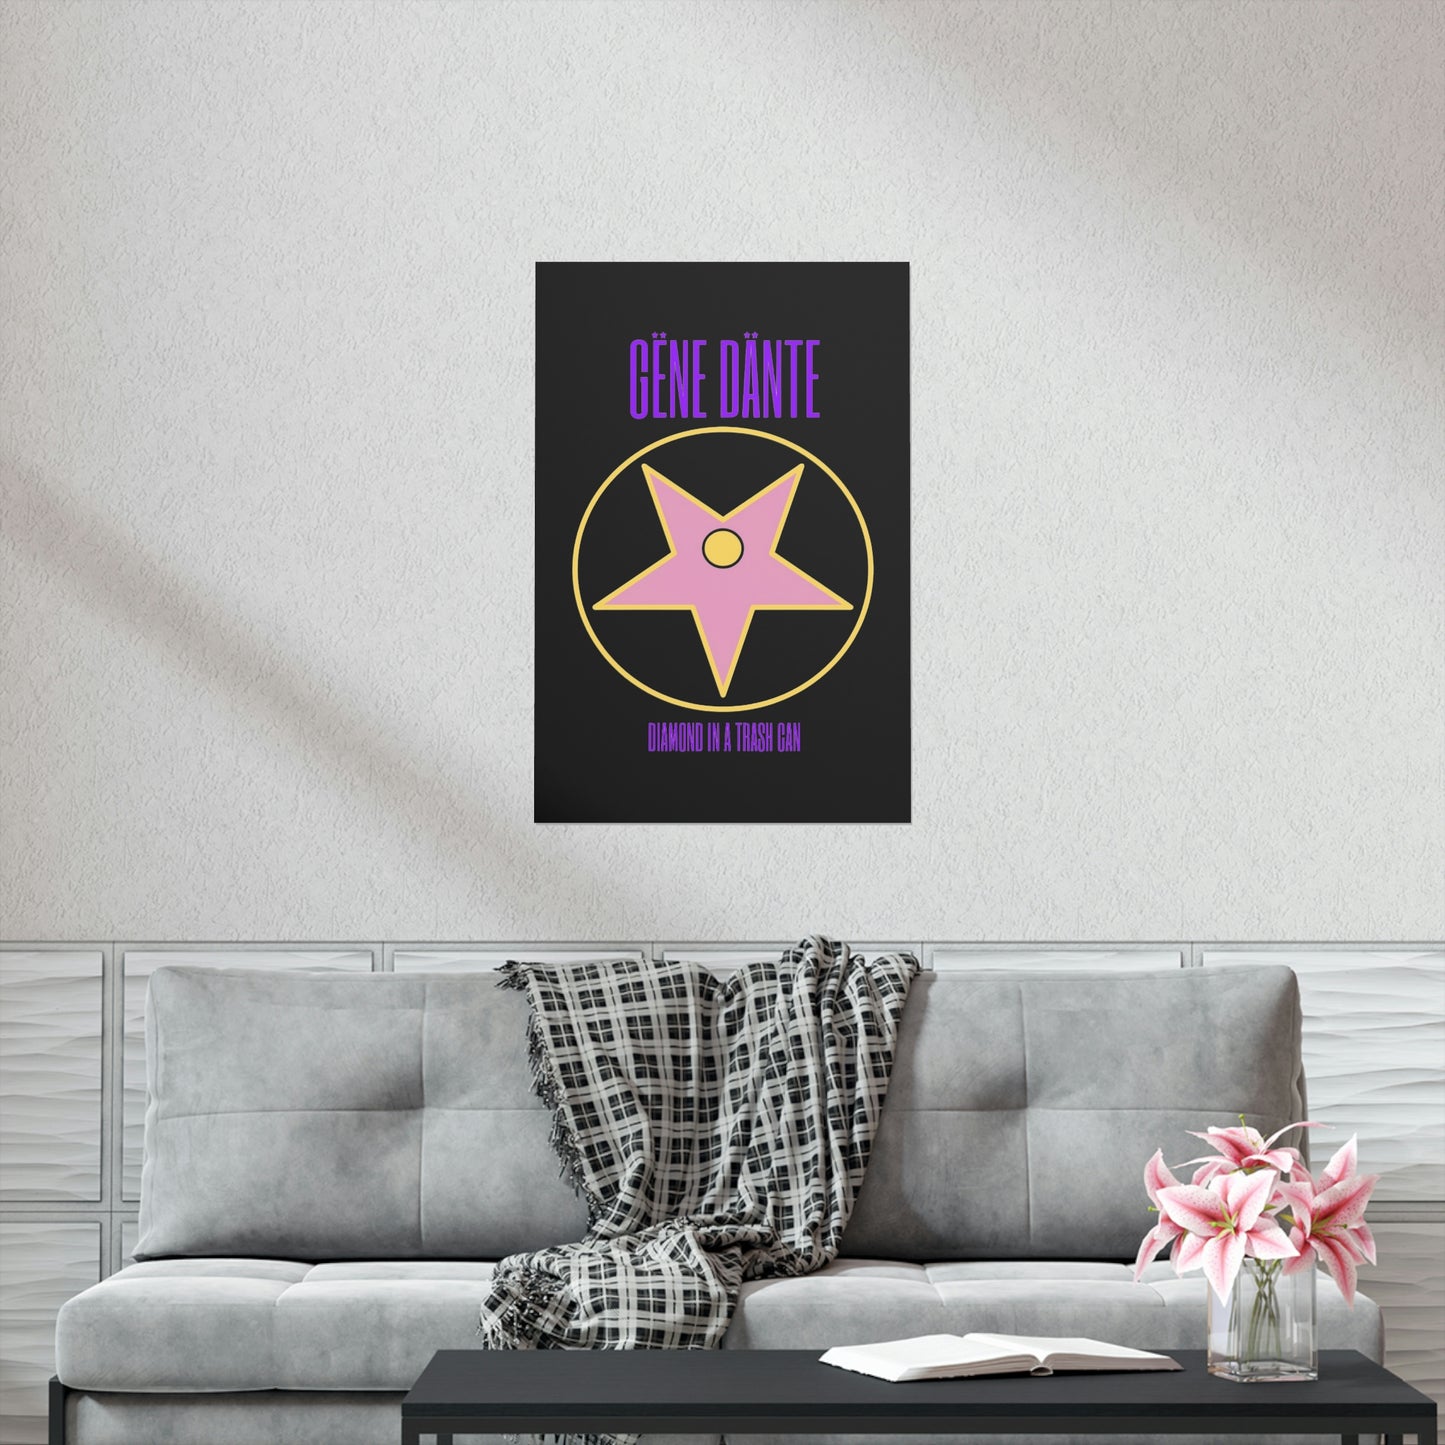 Gene Dante - Poster - Inverted Star